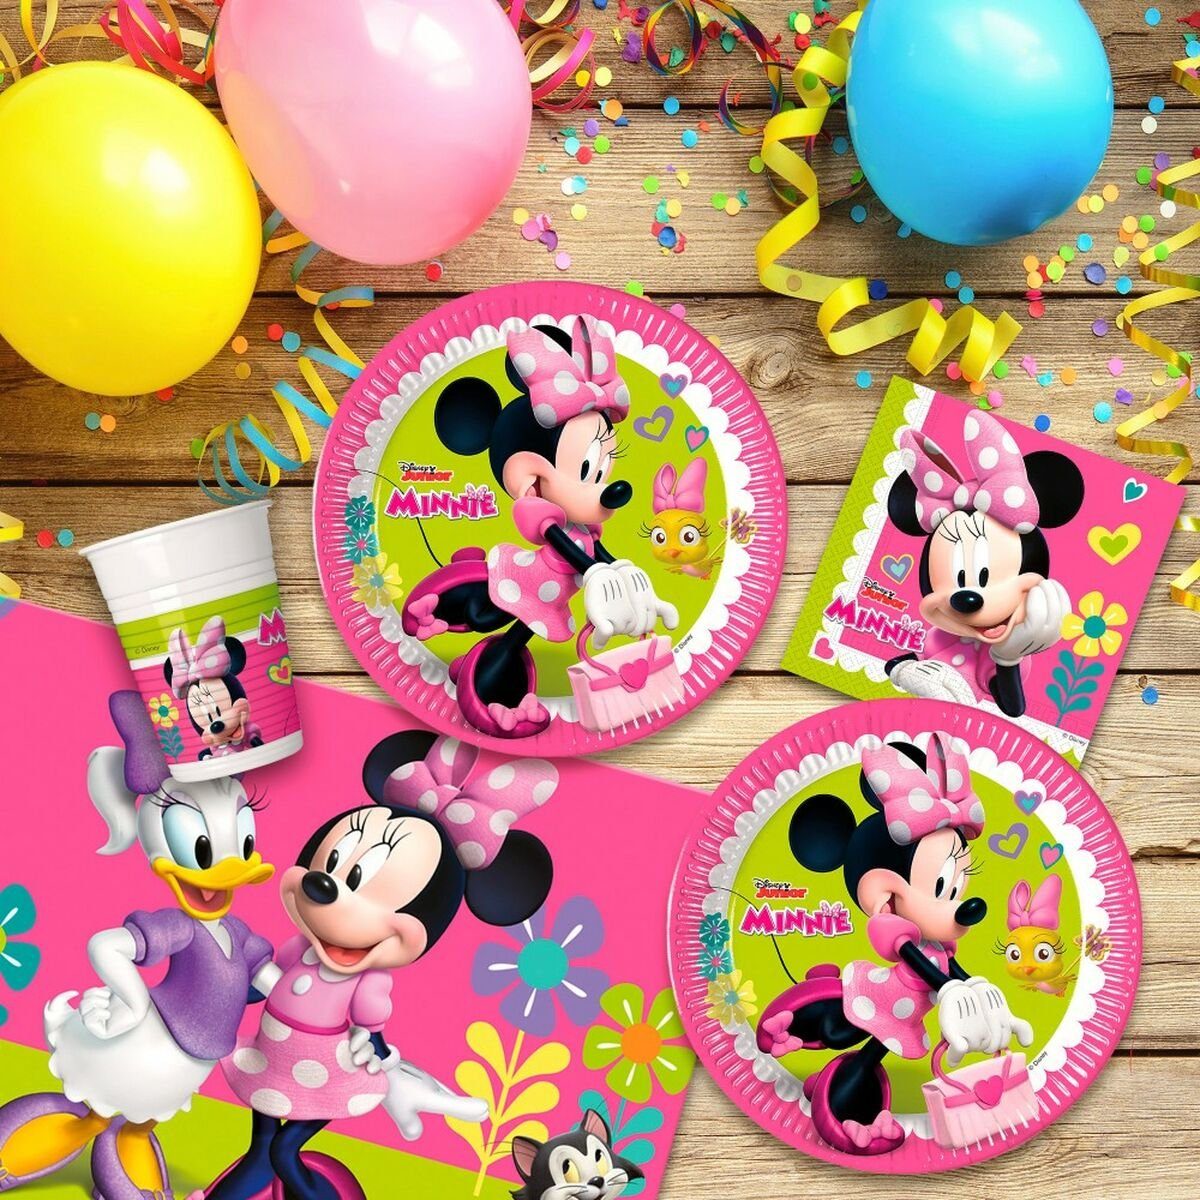 Stücke Set Minnie Einweggeschirr-Set Disney Minnie Mouse Mouse 37 Partyartikel